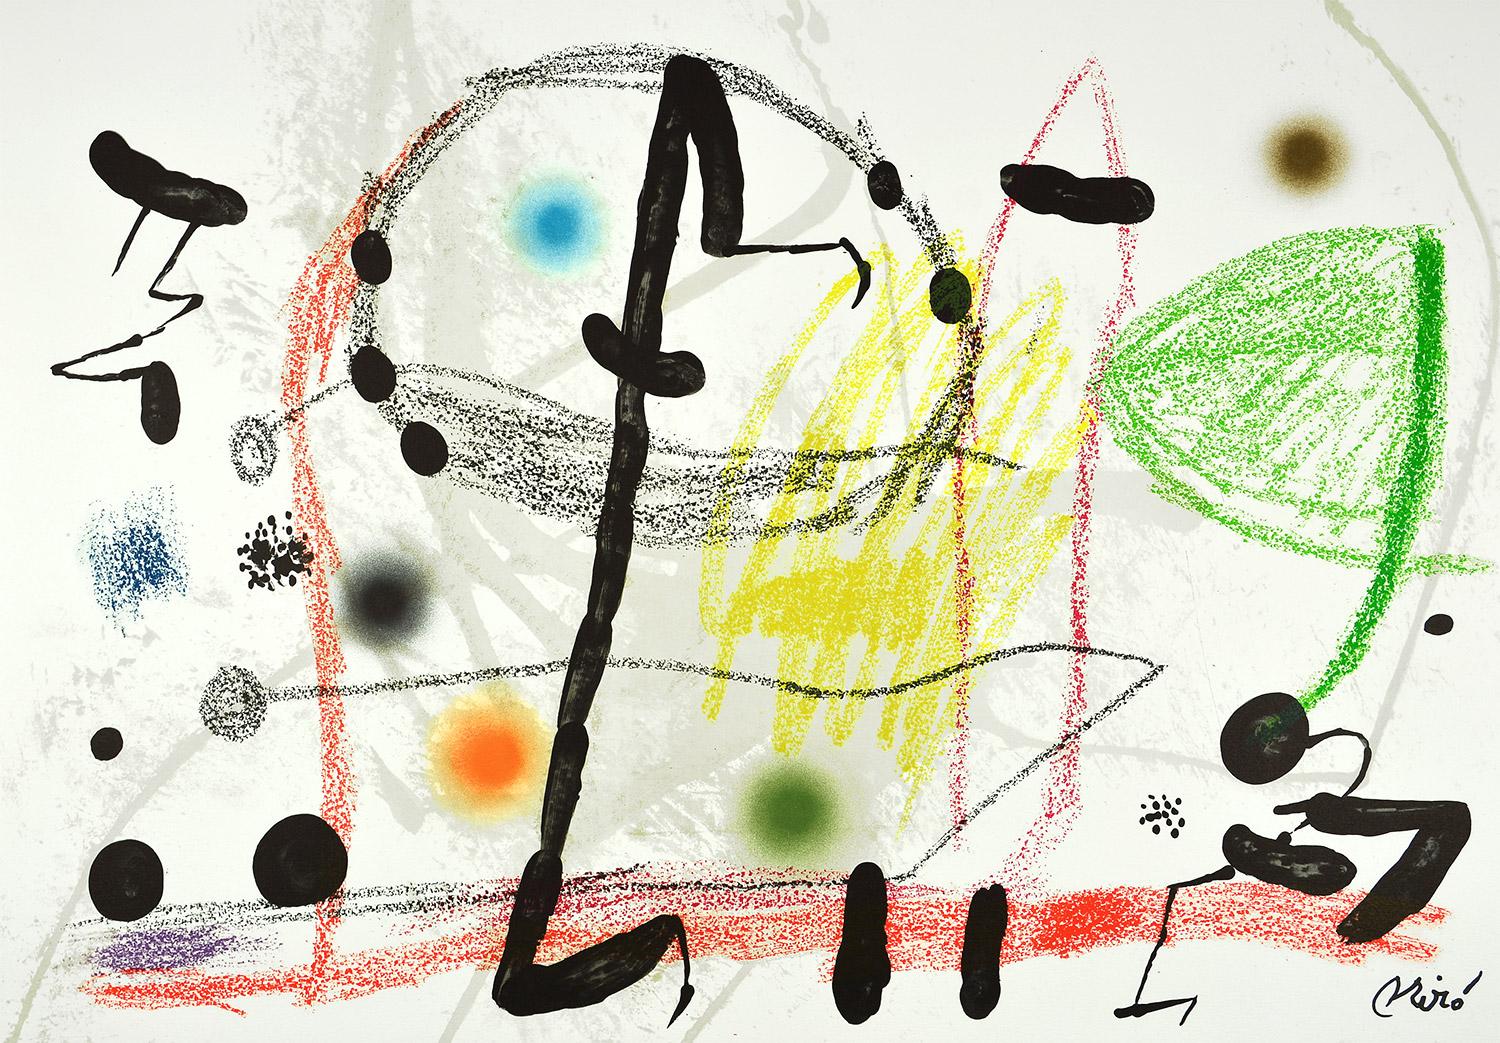 Joan Miró - Maravillas con variaciones acrósticas en el jardín de Miró XIII
Date de création : 1975
Support : Lithographie sur papier Gvarro
Édition : 1500
Taille : 49,5 x 71 cm
Condit : En très bon état et jamais encadré
Observations :
Lithographie